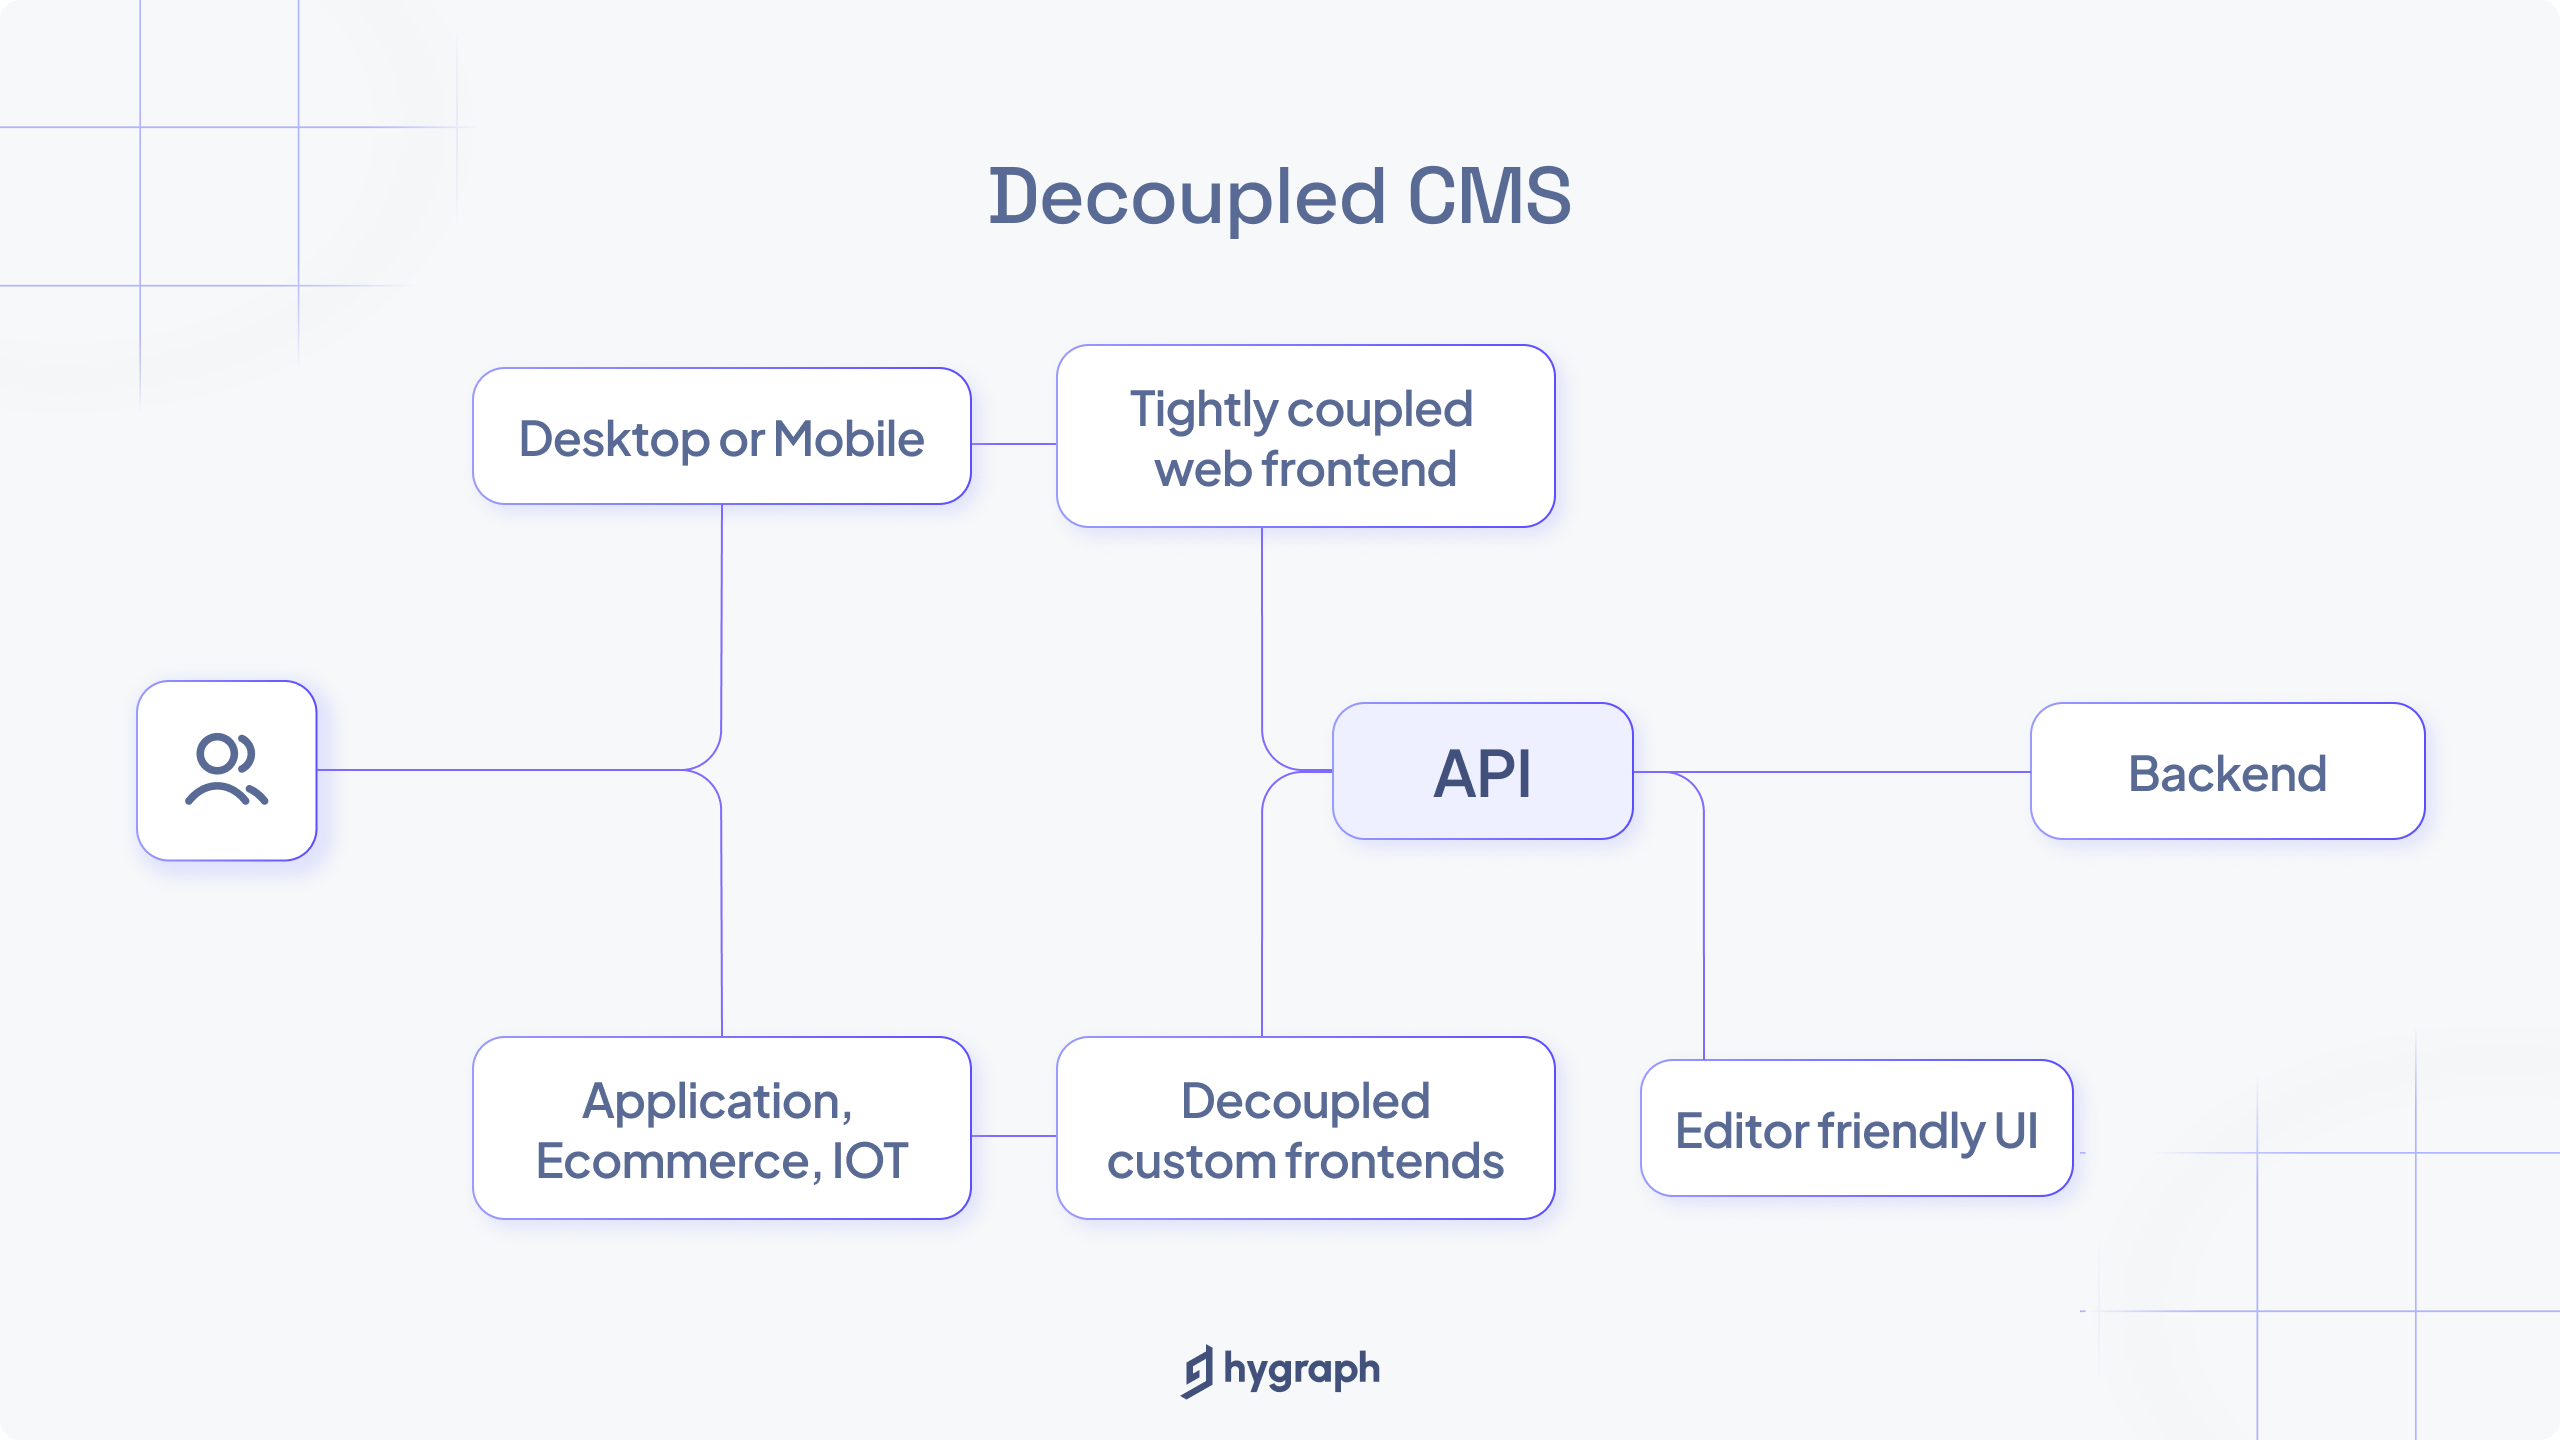 How does decoupled CMS work